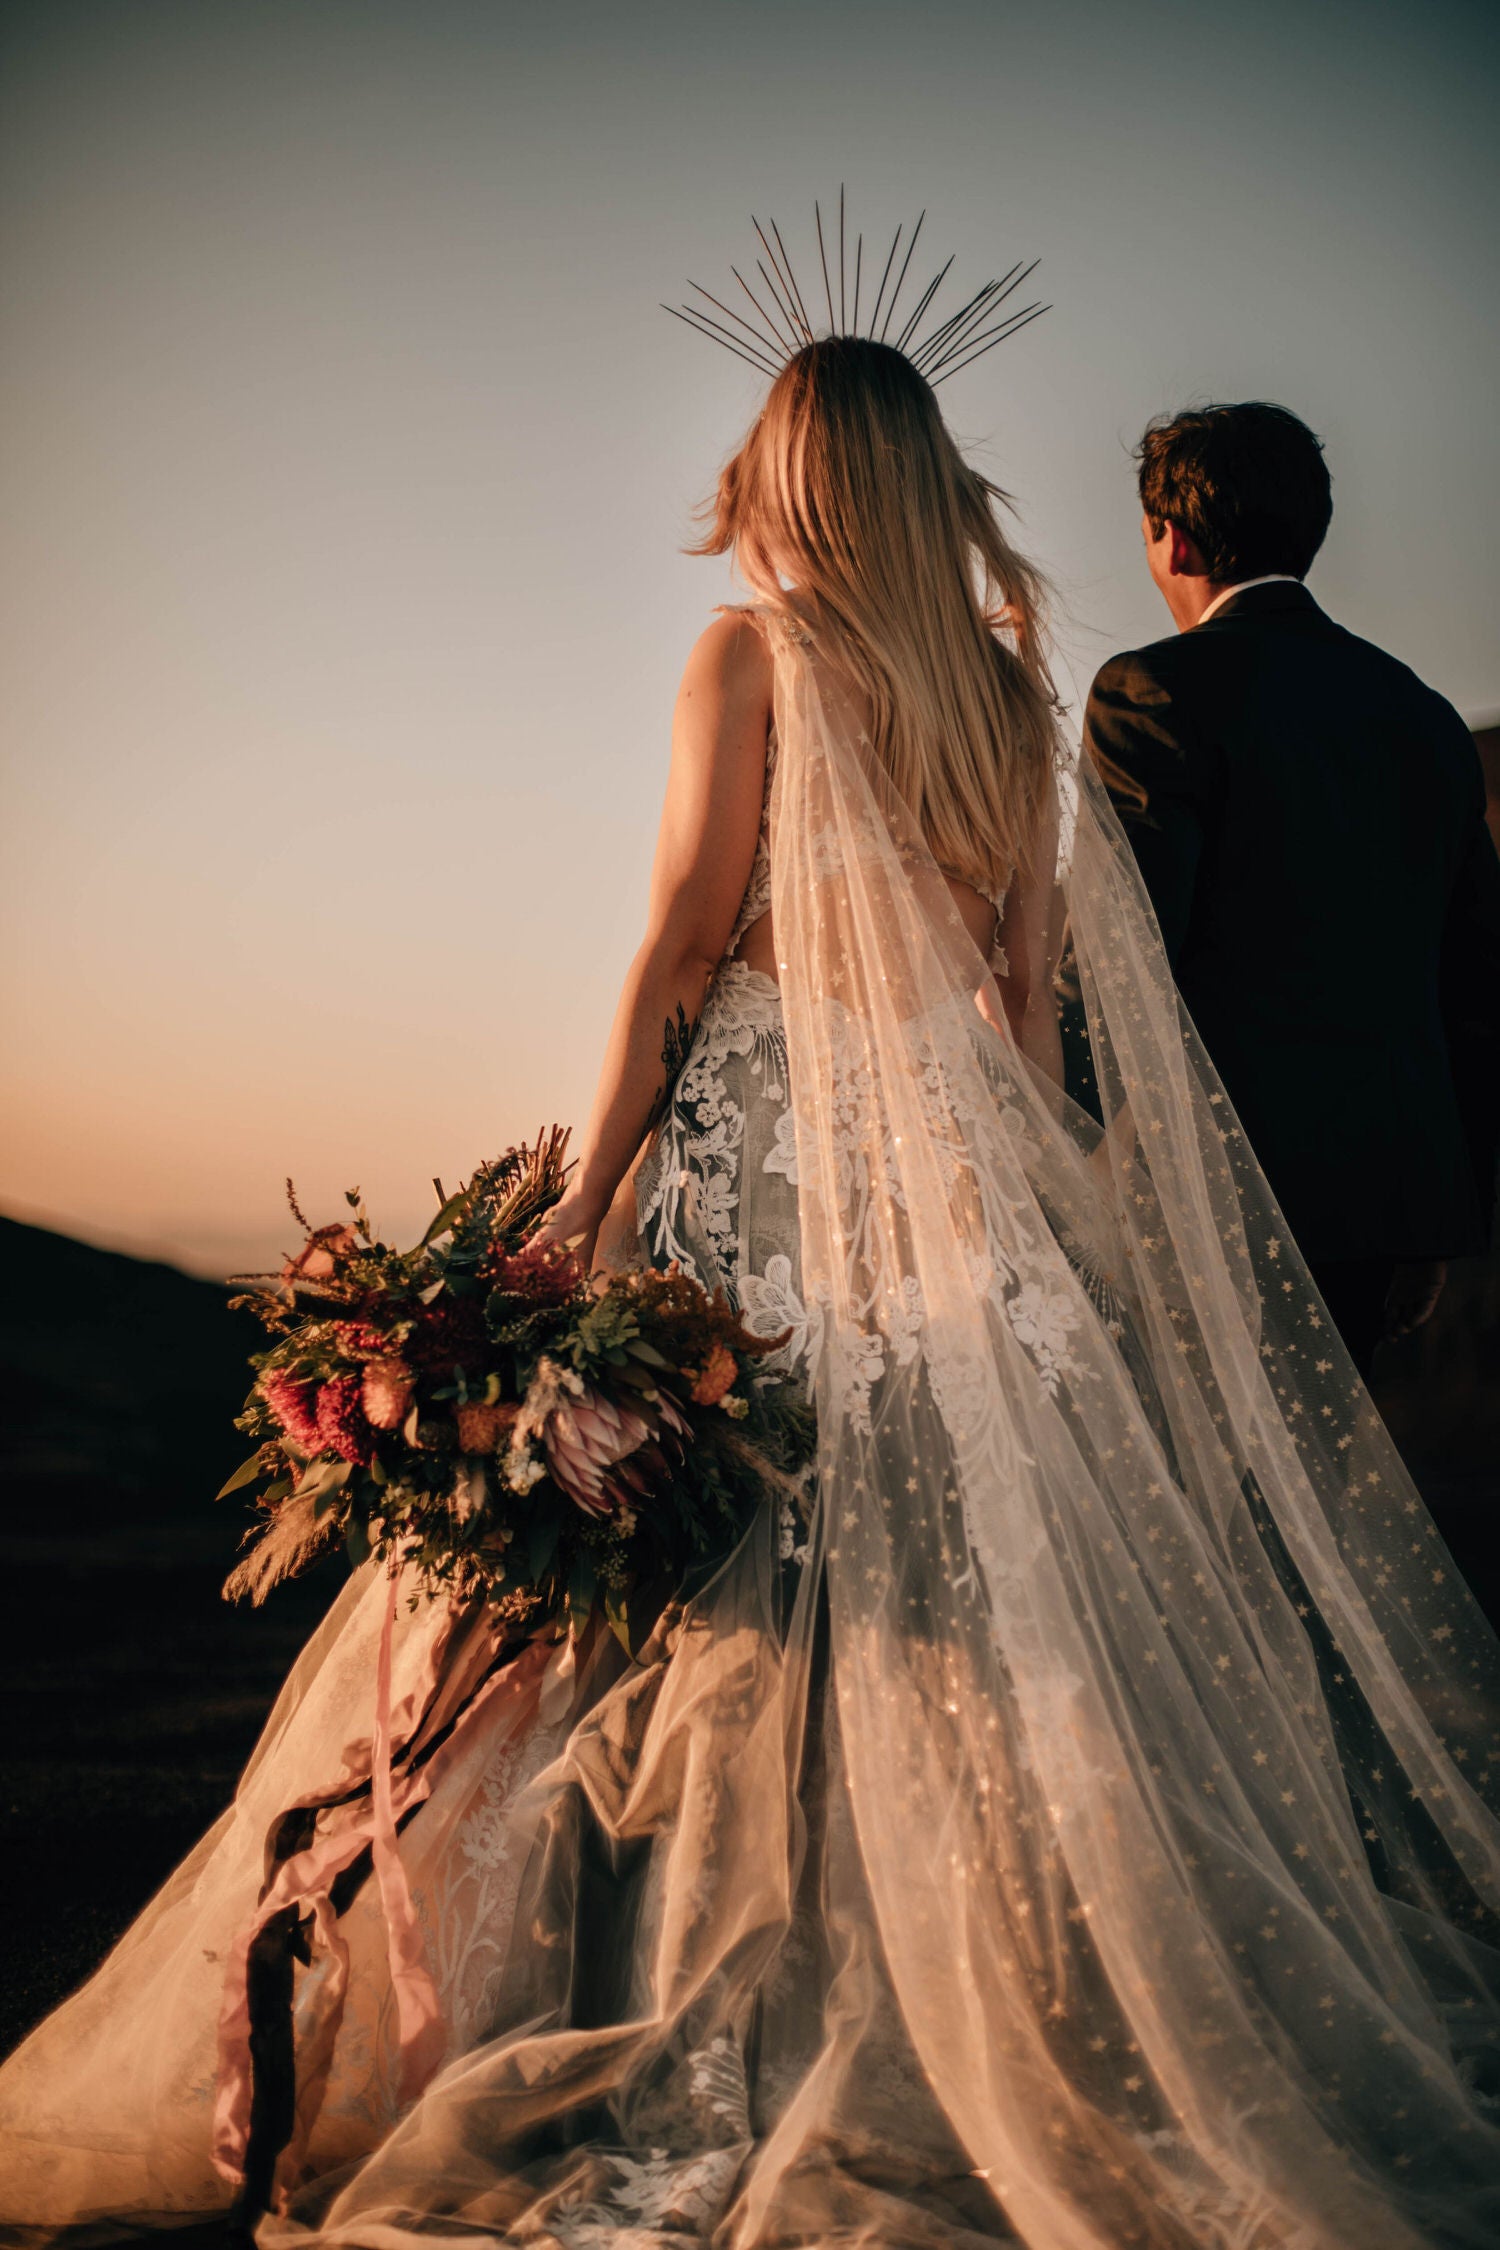 Wedding Veils & Bridal Veils